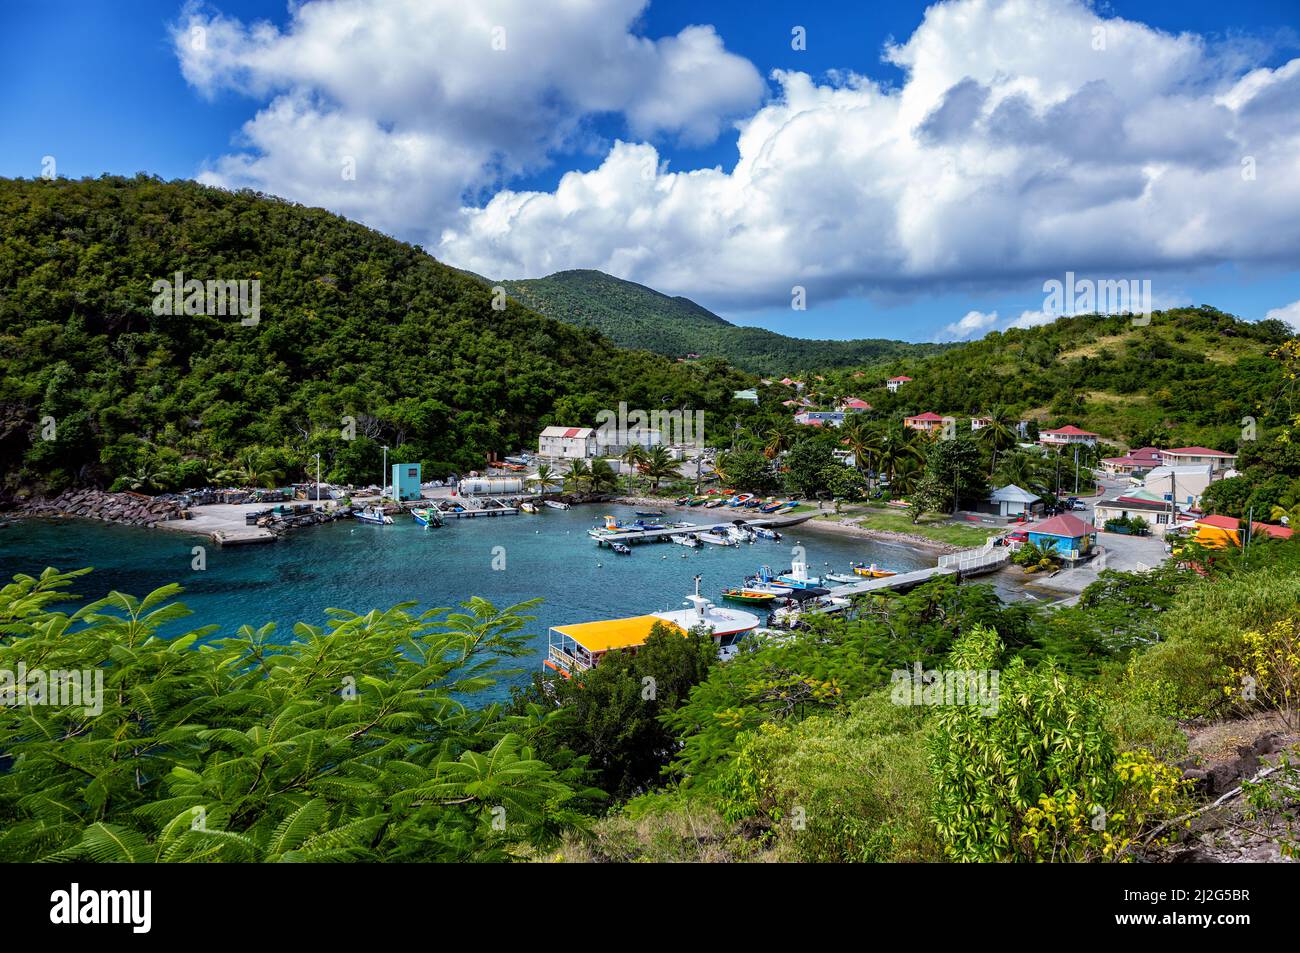 Port of the island of Terre-de-Bas, Iles des Saintes, Les Saintes, Guadeloupe, Lesser Antilles, Caribbean. View from Point du Fer a Cheval. Stock Photo